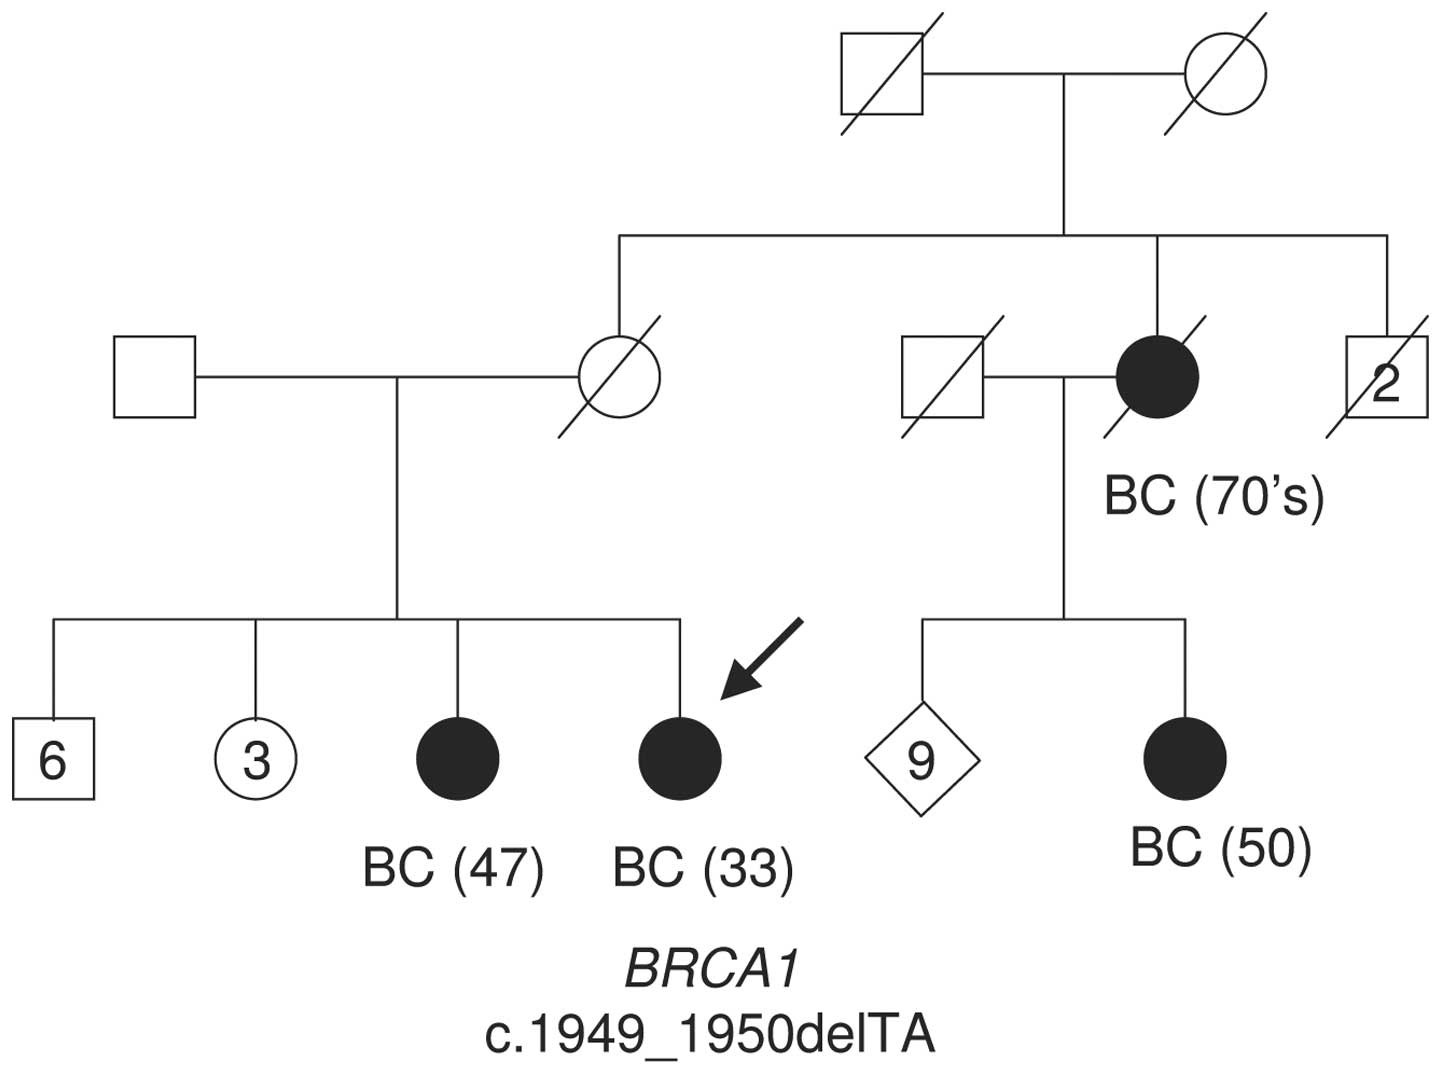 Cancerul ereditar de sân și ovar (HBOC) și testarea mutațiilor în genele BRCA1 și BRCA2 - Synevo